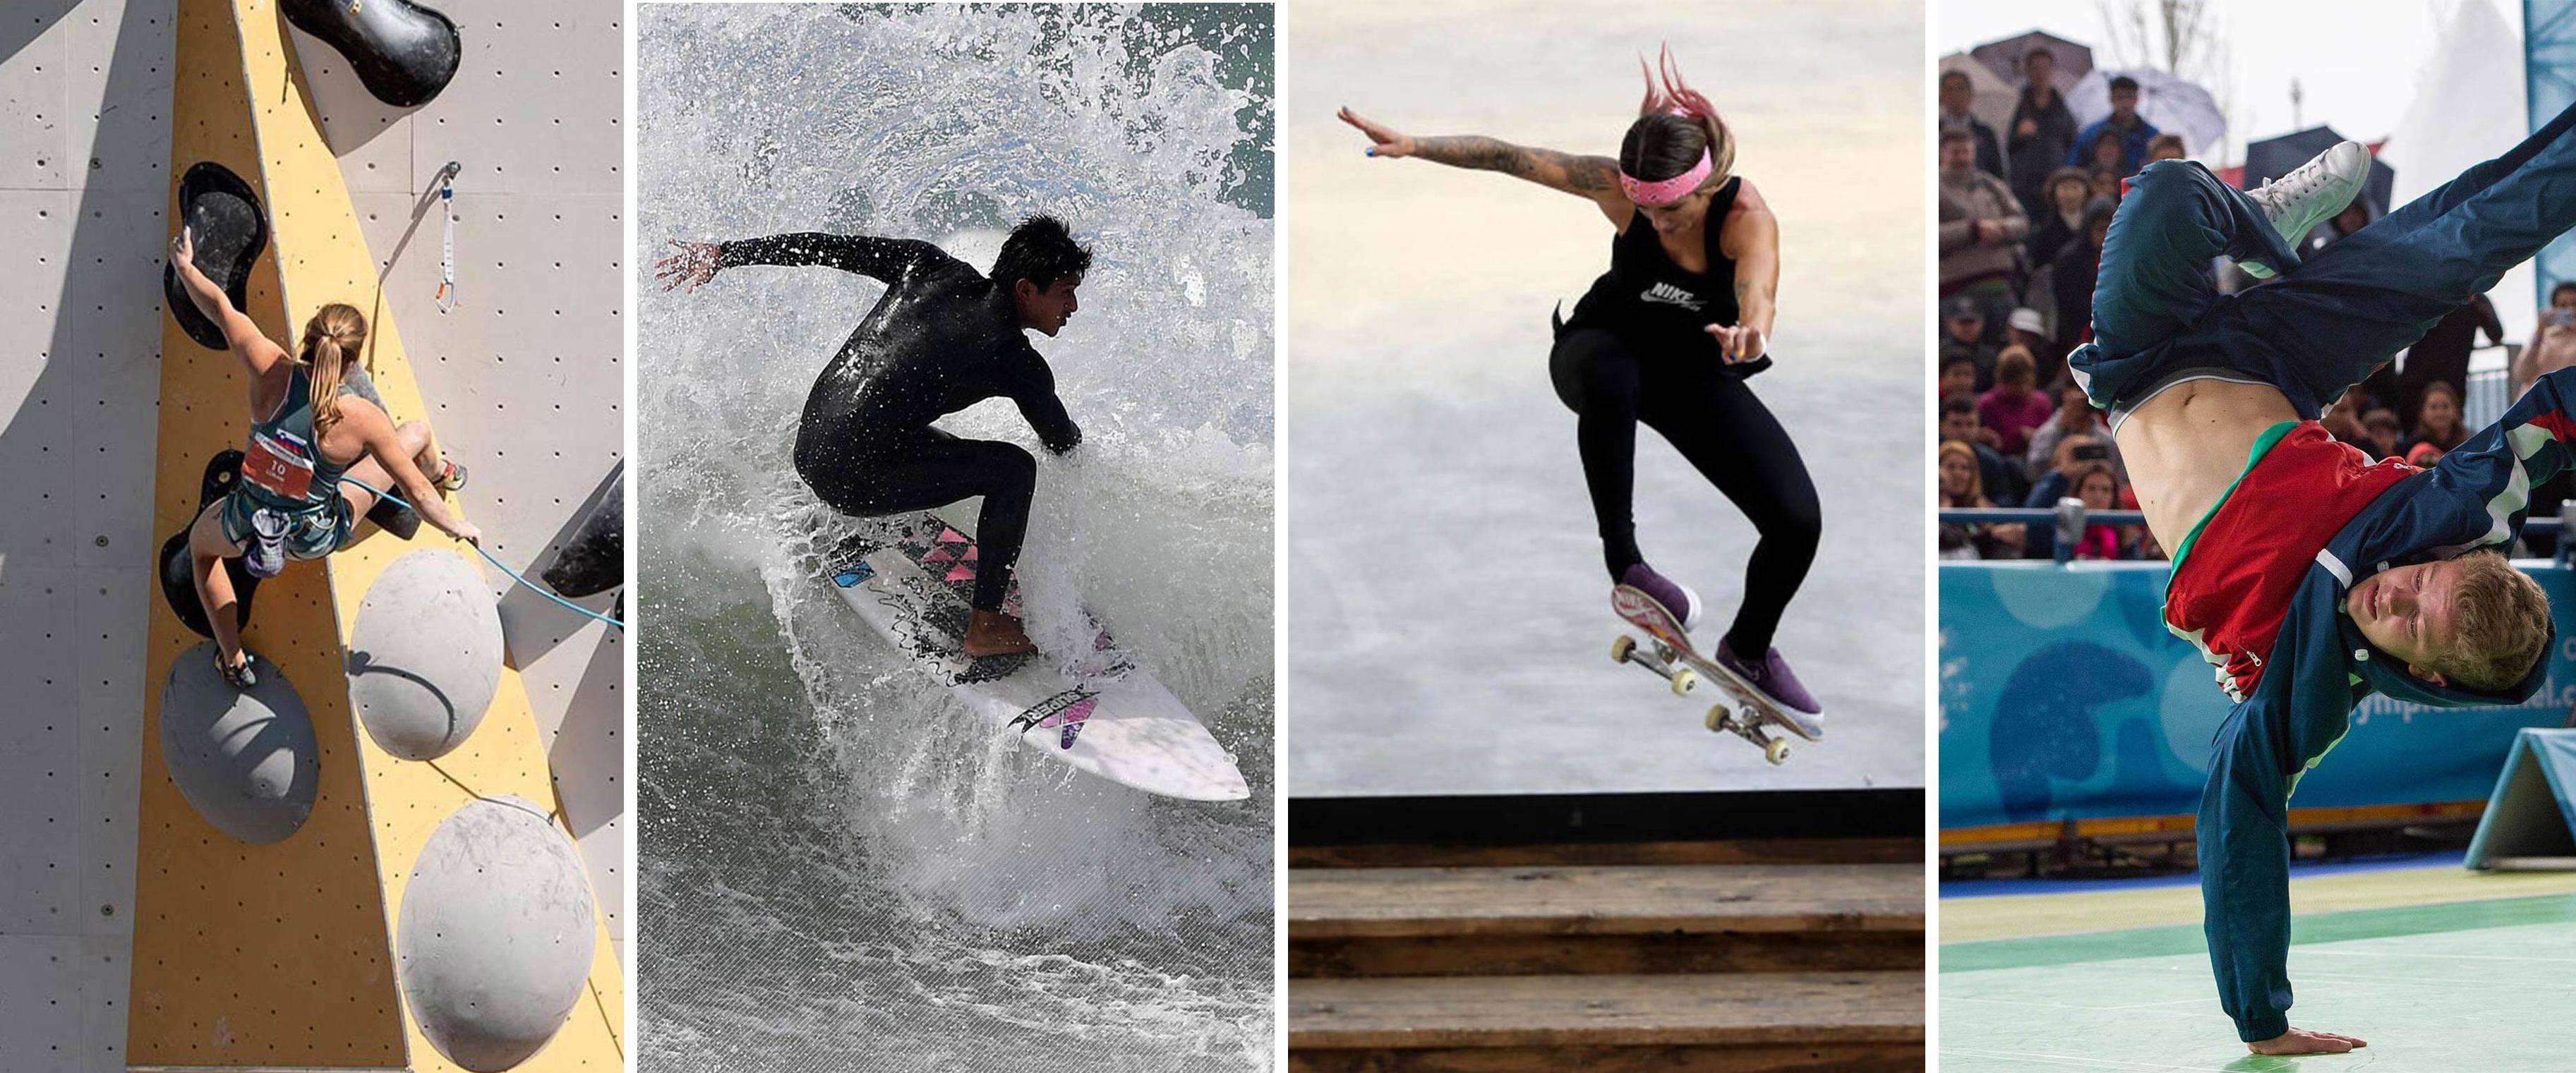 Скейтбординг, сноуборд-кросс, сёрфинг и скалолазание: новые олимпийские дисцплины утверждены МОК